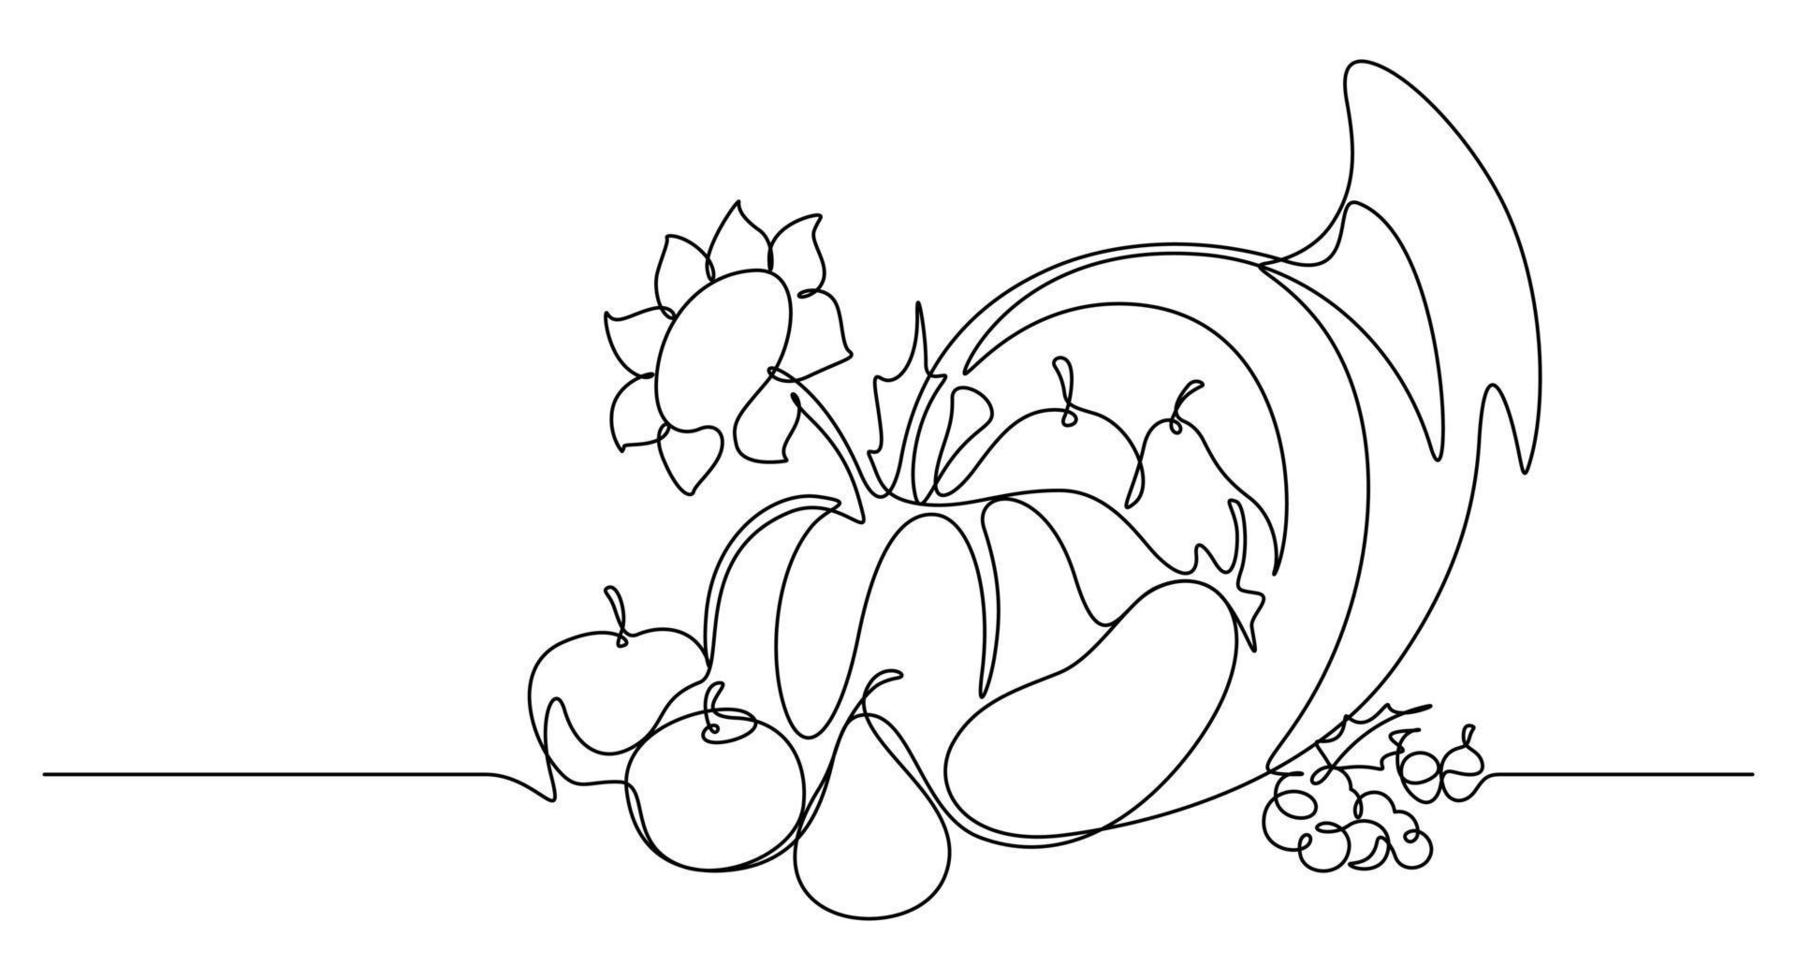 style de dessin au trait continu de l'illustration vectorielle de la corne d'abondance. jour de thanksgiving vecteur